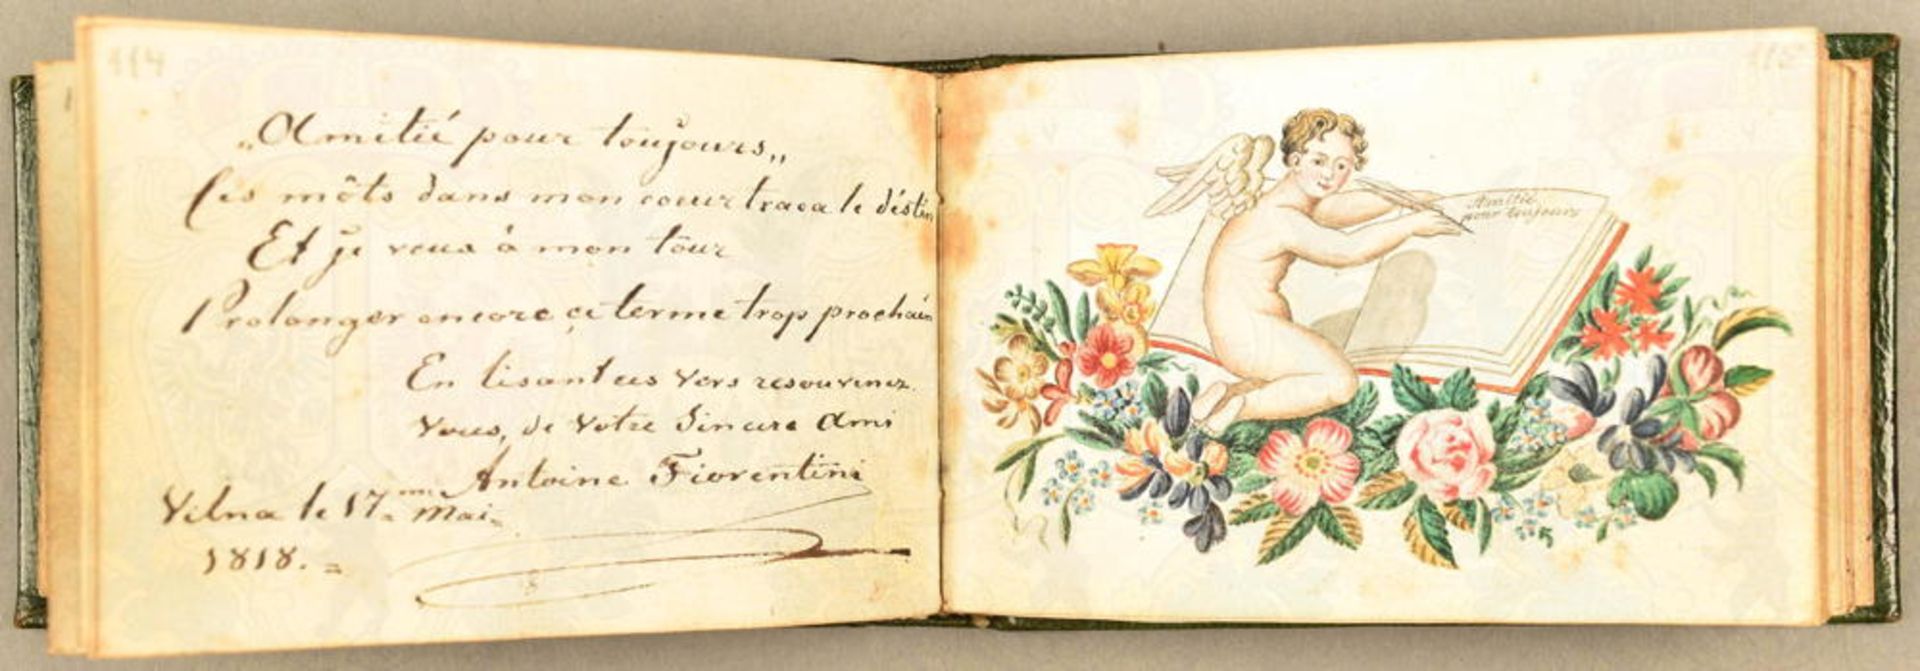 Poesie-Album einer Dame 1813-1844 - Image 2 of 4